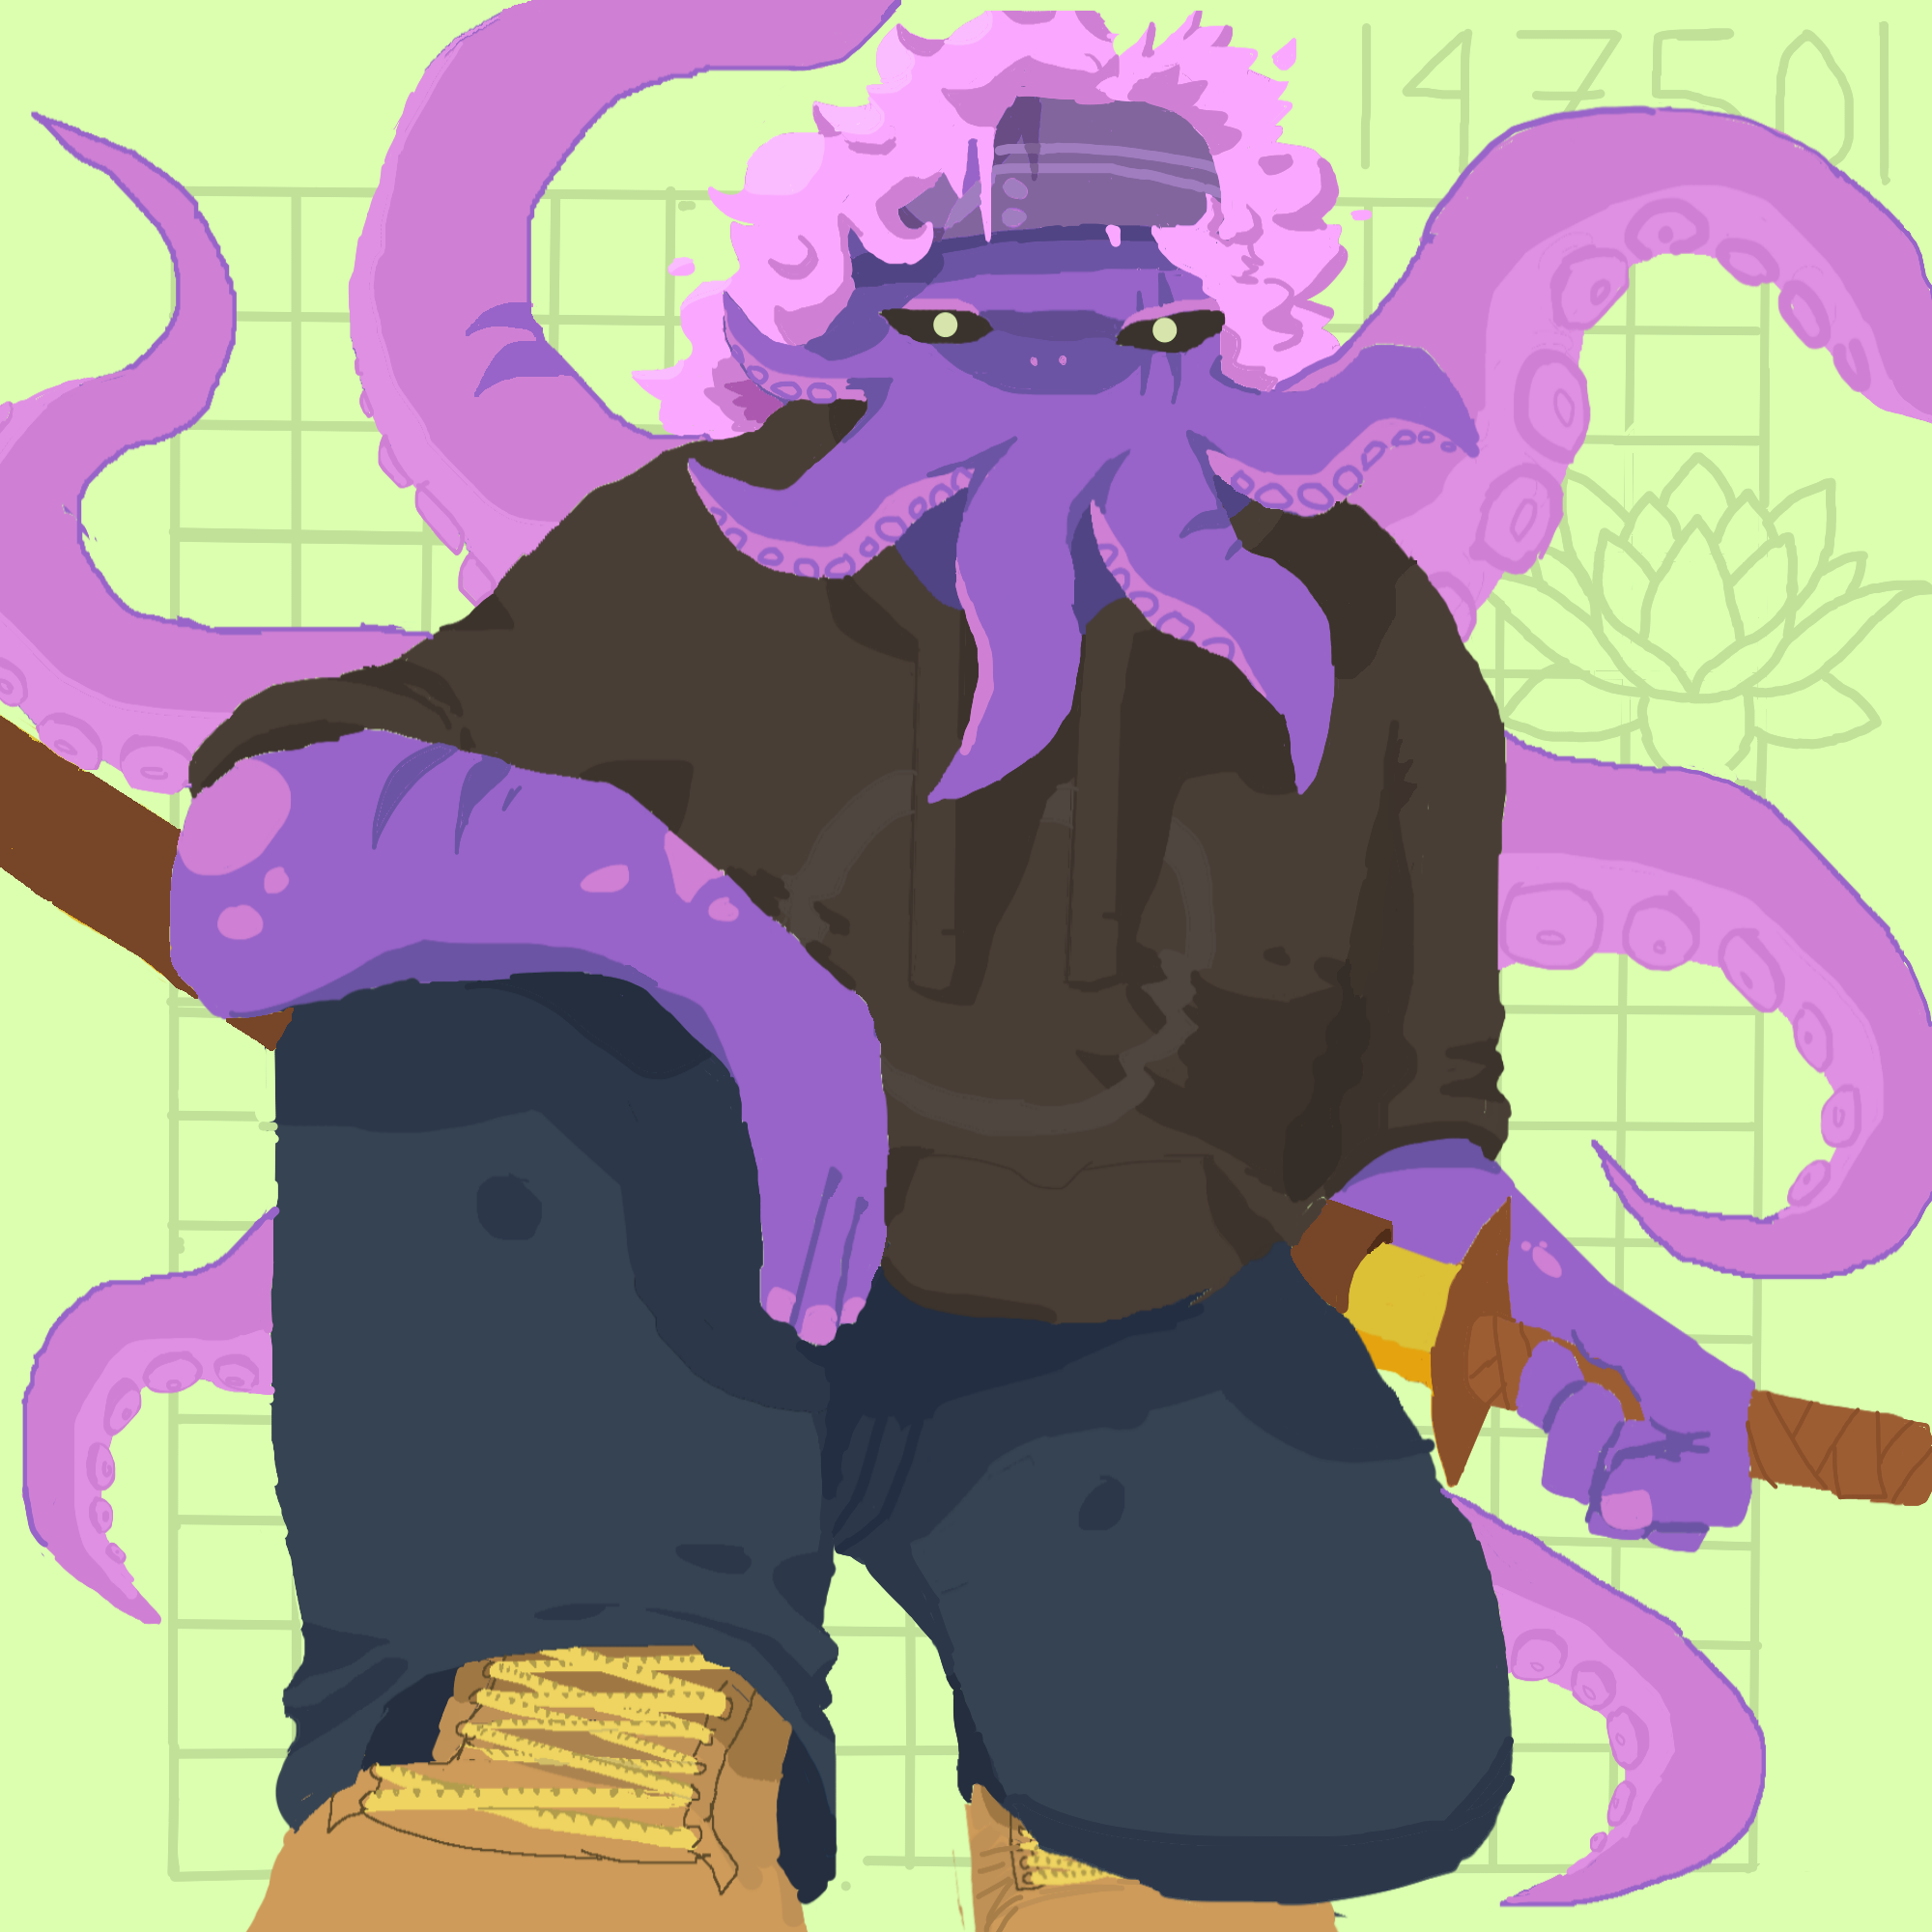 An octopus man